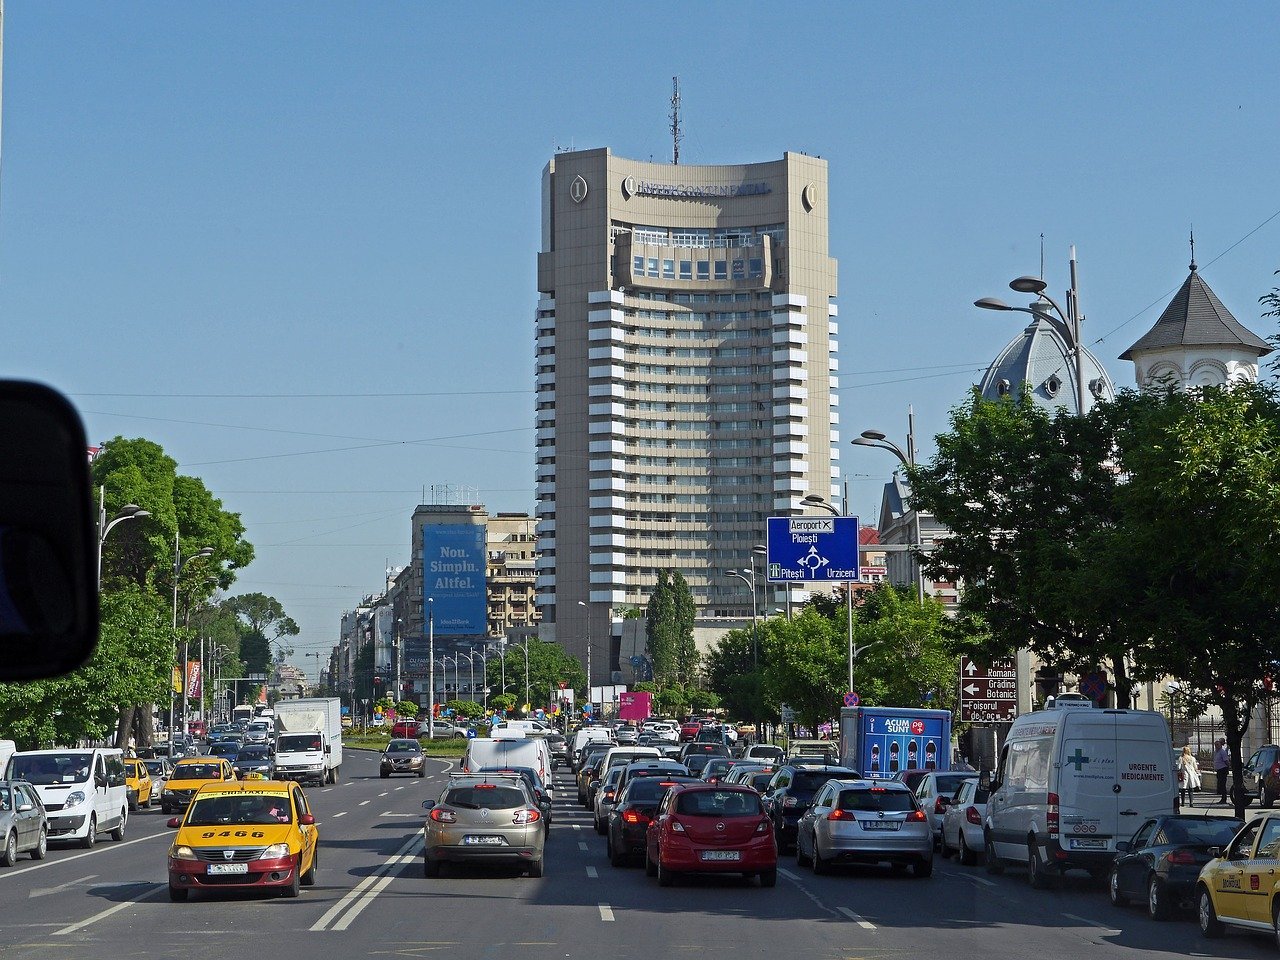  București, în scenariul roșu. Rata de infectare a depășit 3 la mia de locuitori. Școala devine online, se închid restaurantele și cinematografele